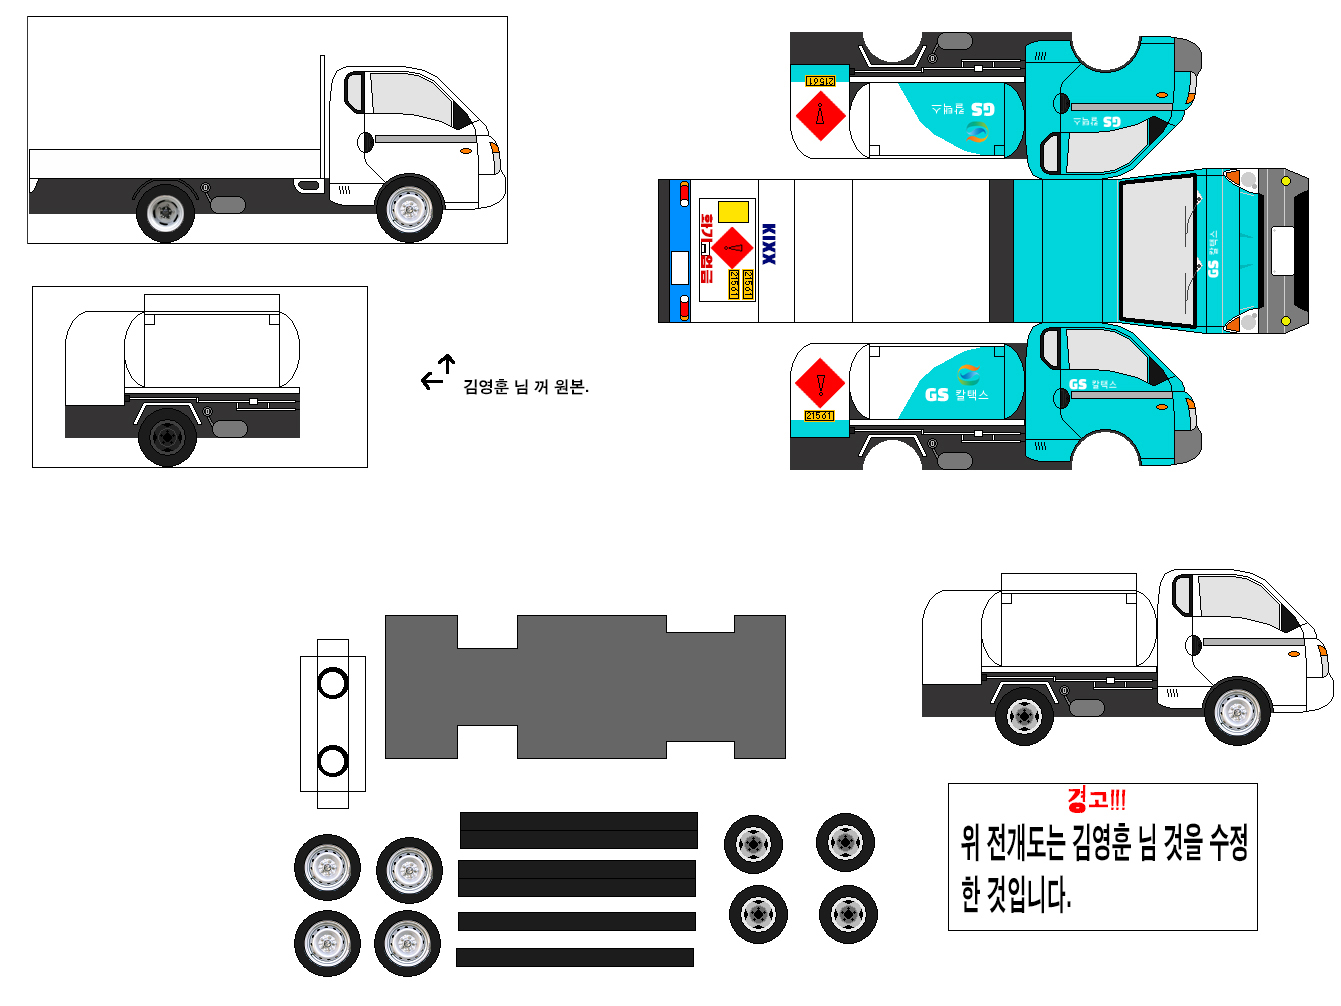 현대 포터2 초장축 슈퍼캐빈 카고트럭 유조차(2004_) 수정....jpg